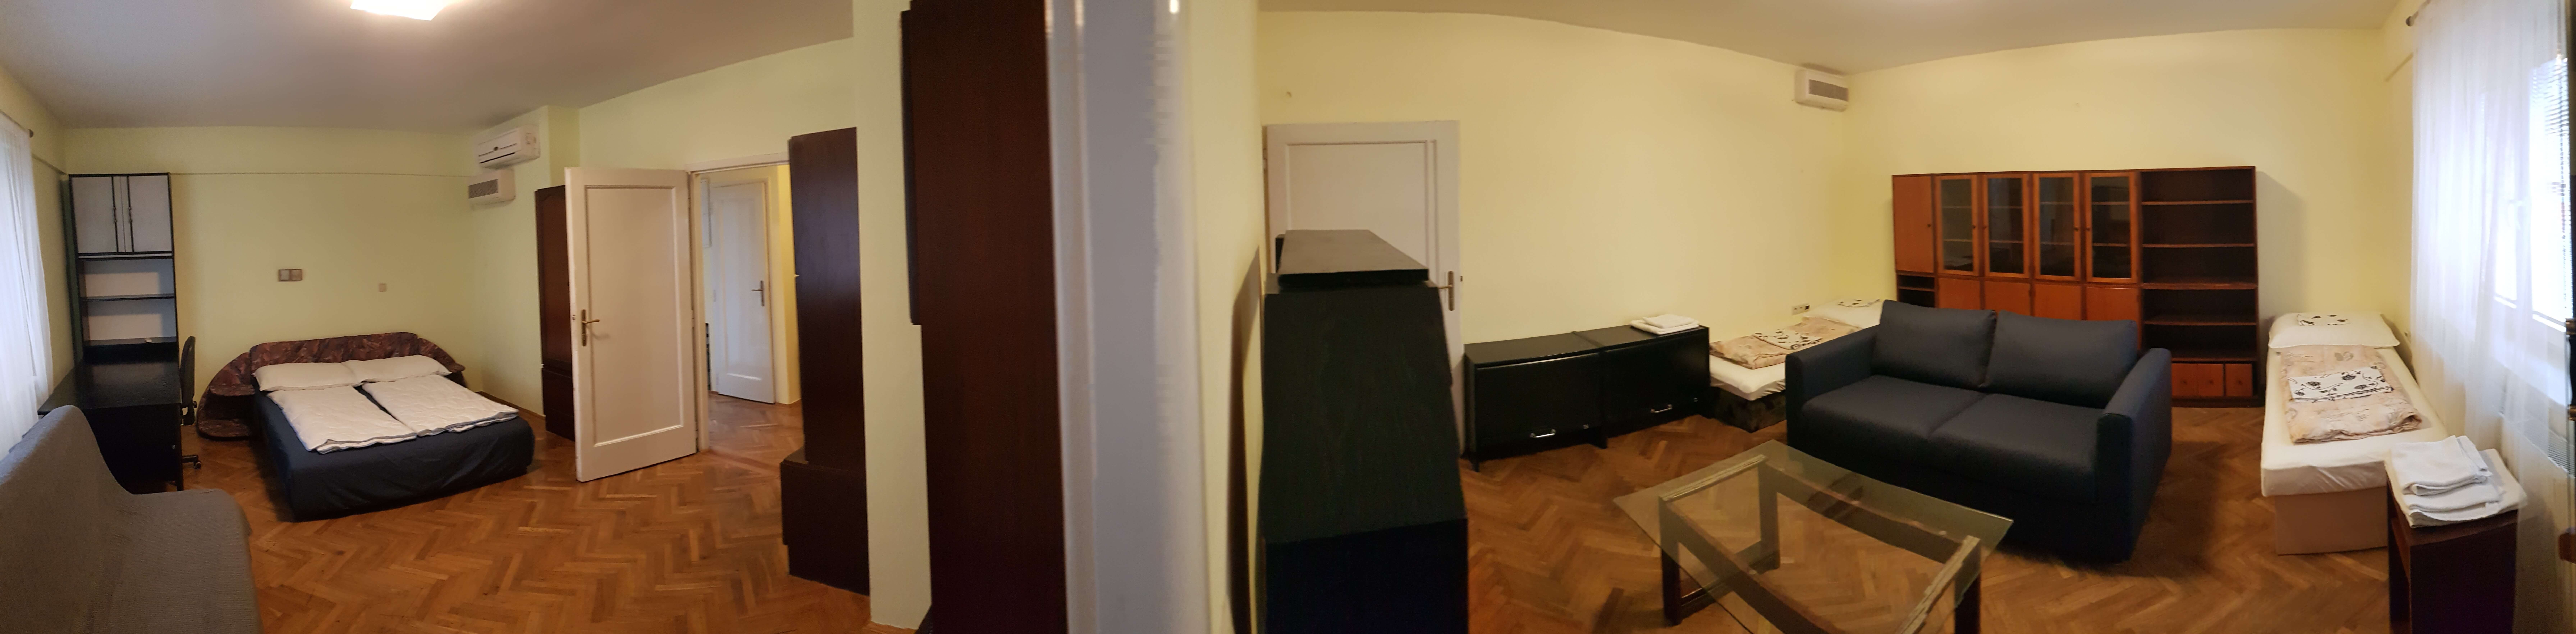 Prenajaté: Prenájom jednej izby v 2 izb. byte, staré mesto, Šancová ulica, Bratislava, 80m2, zariadený-10